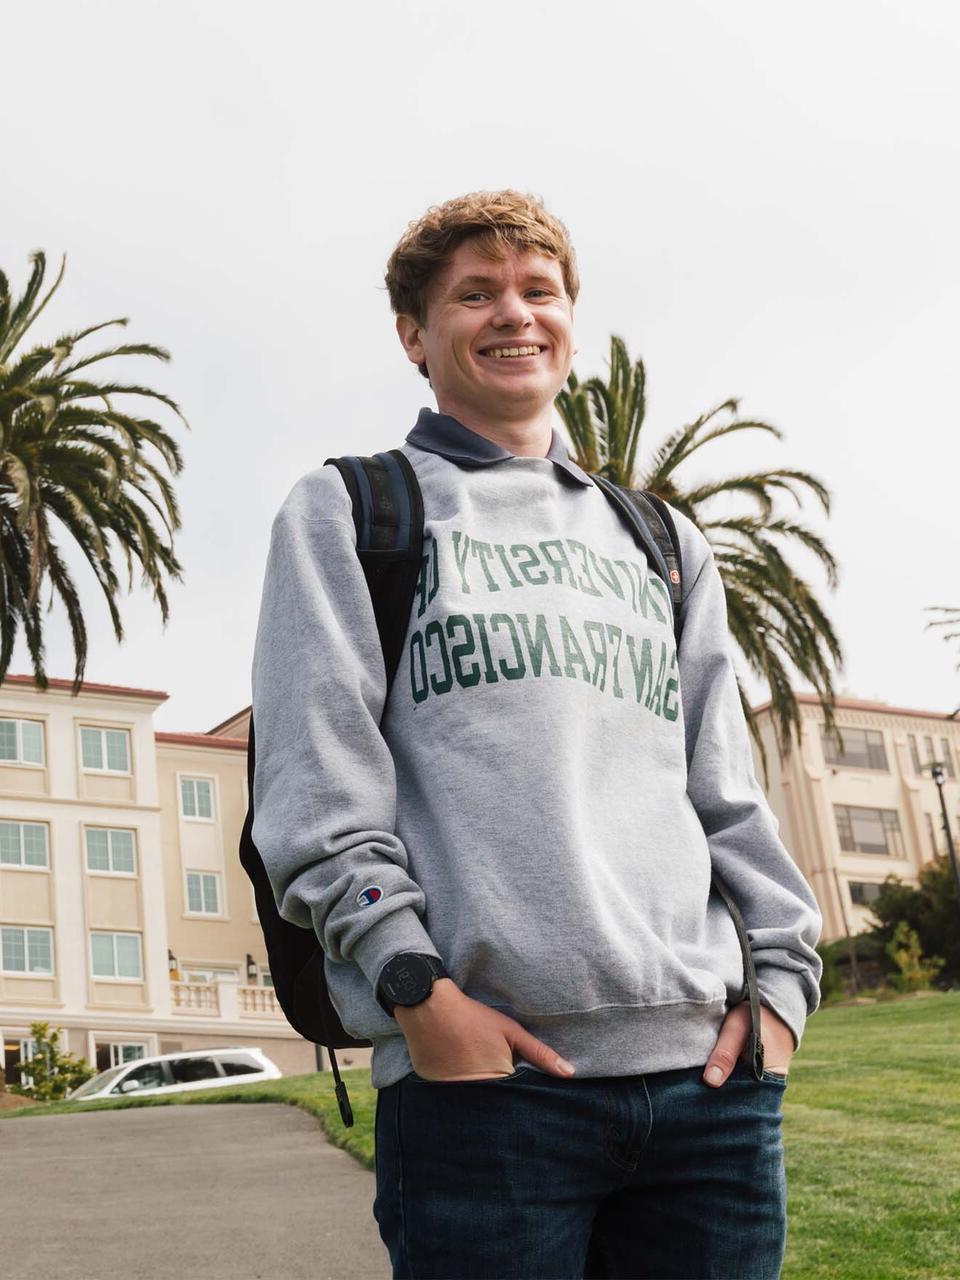 穿着南加州大学运动衫的学生站在孤山宿舍前.